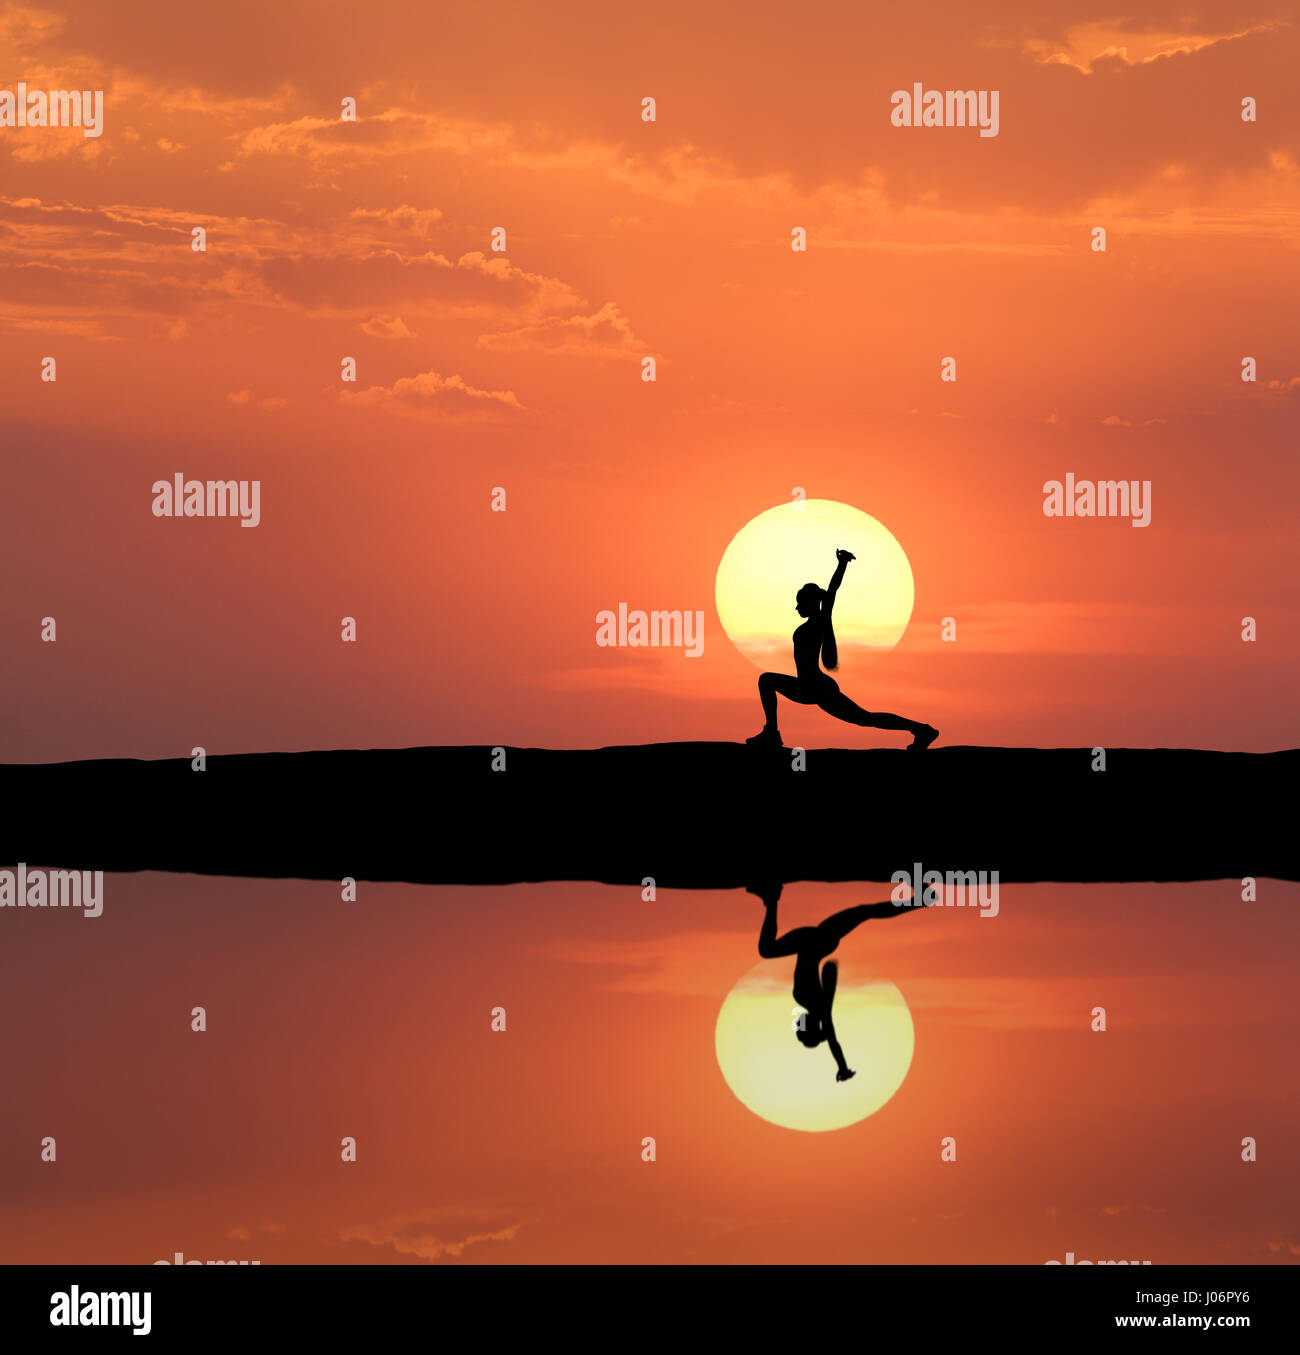 Silueta de una mujer deportiva permanente practicando yoga con los brazos levantados en la colina cerca del lago con el cielo del reflejo en el agua. Sol y cielo naranja w Foto de stock